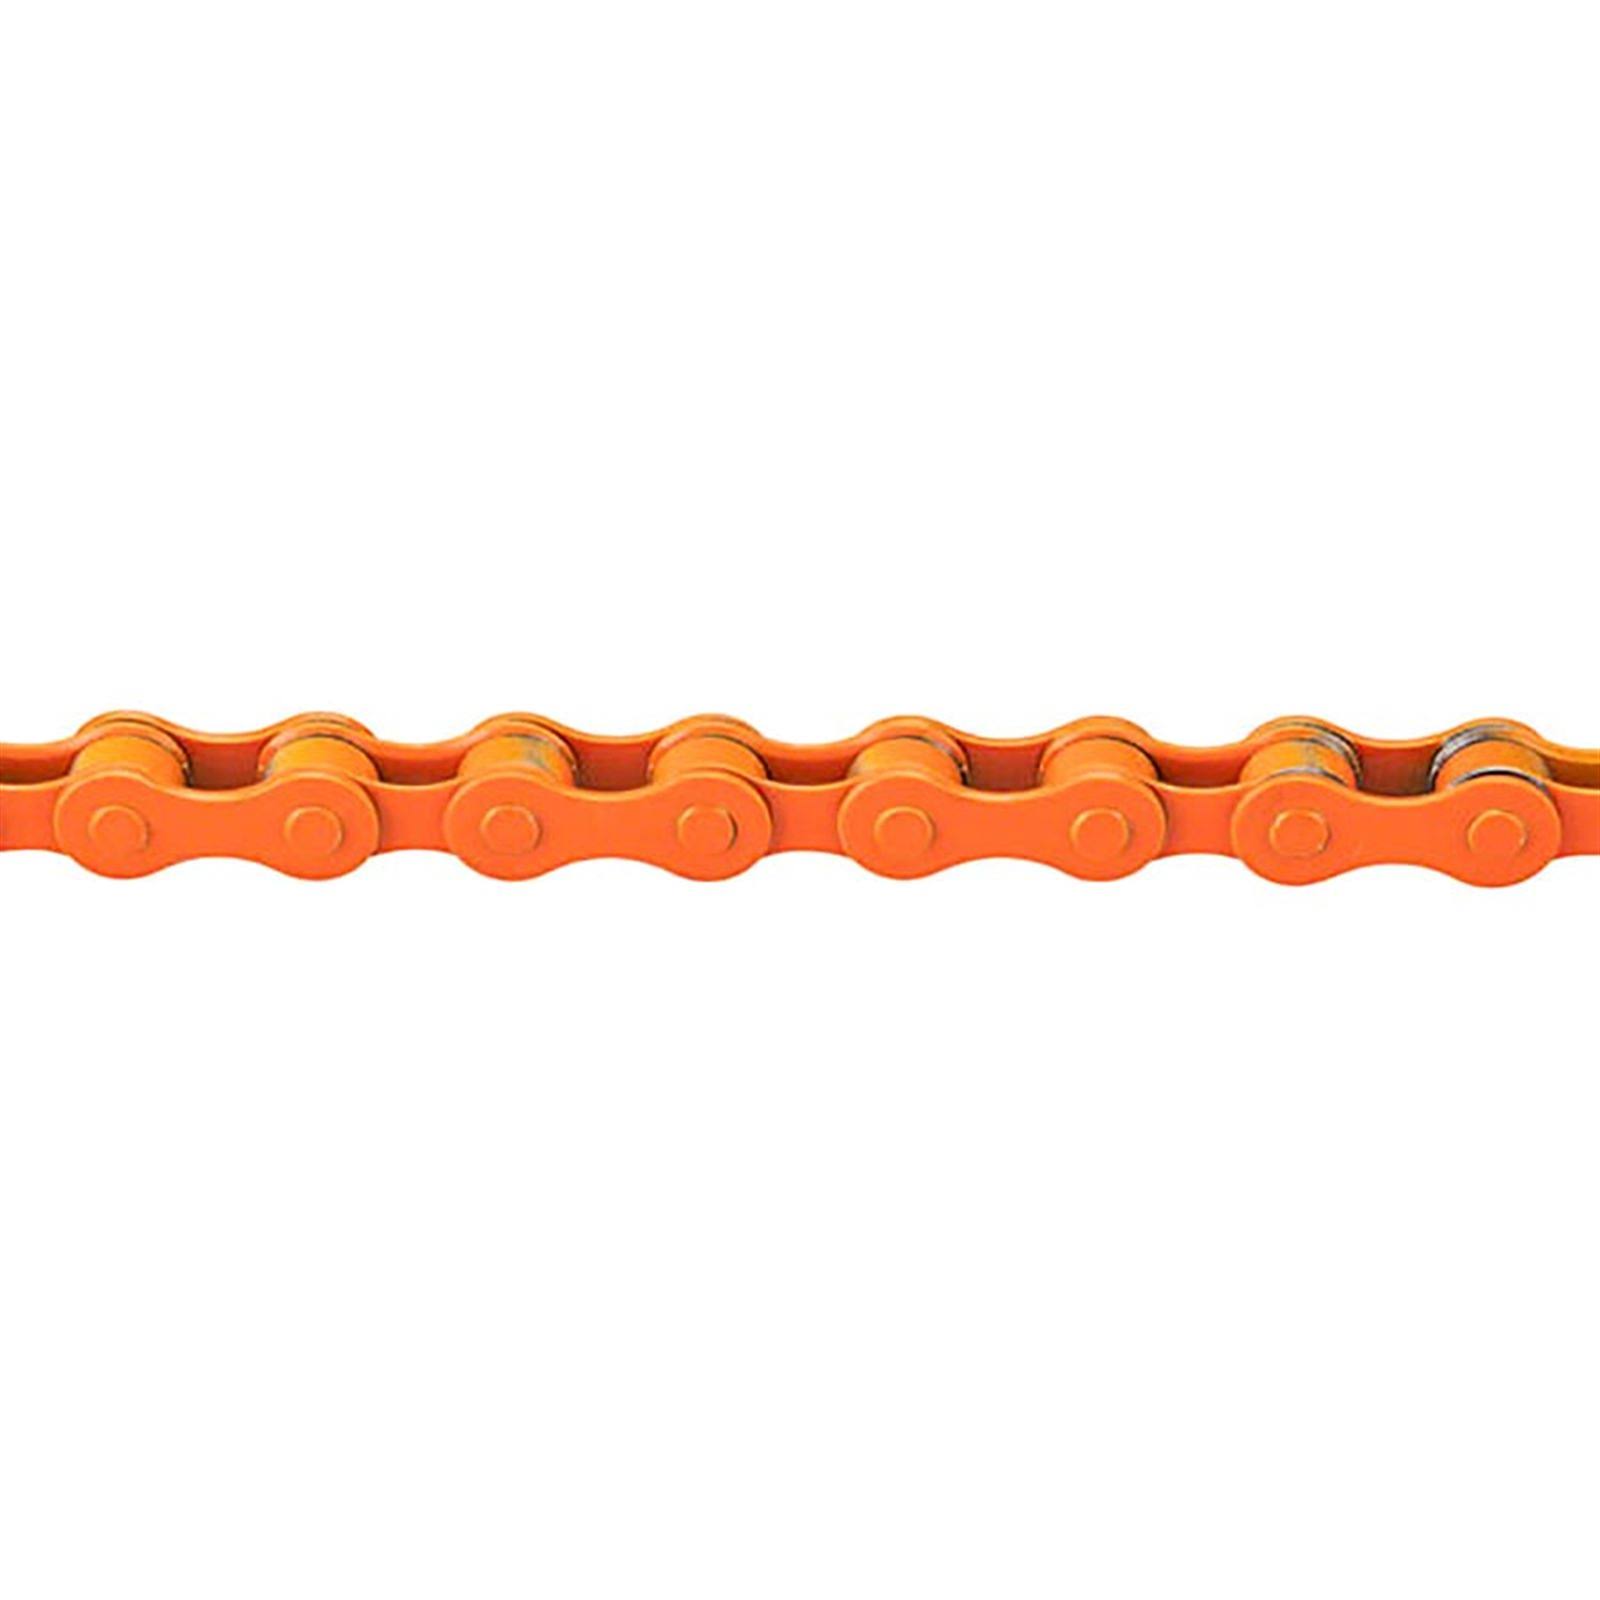 KMC S1 Chain 1/8" Orange